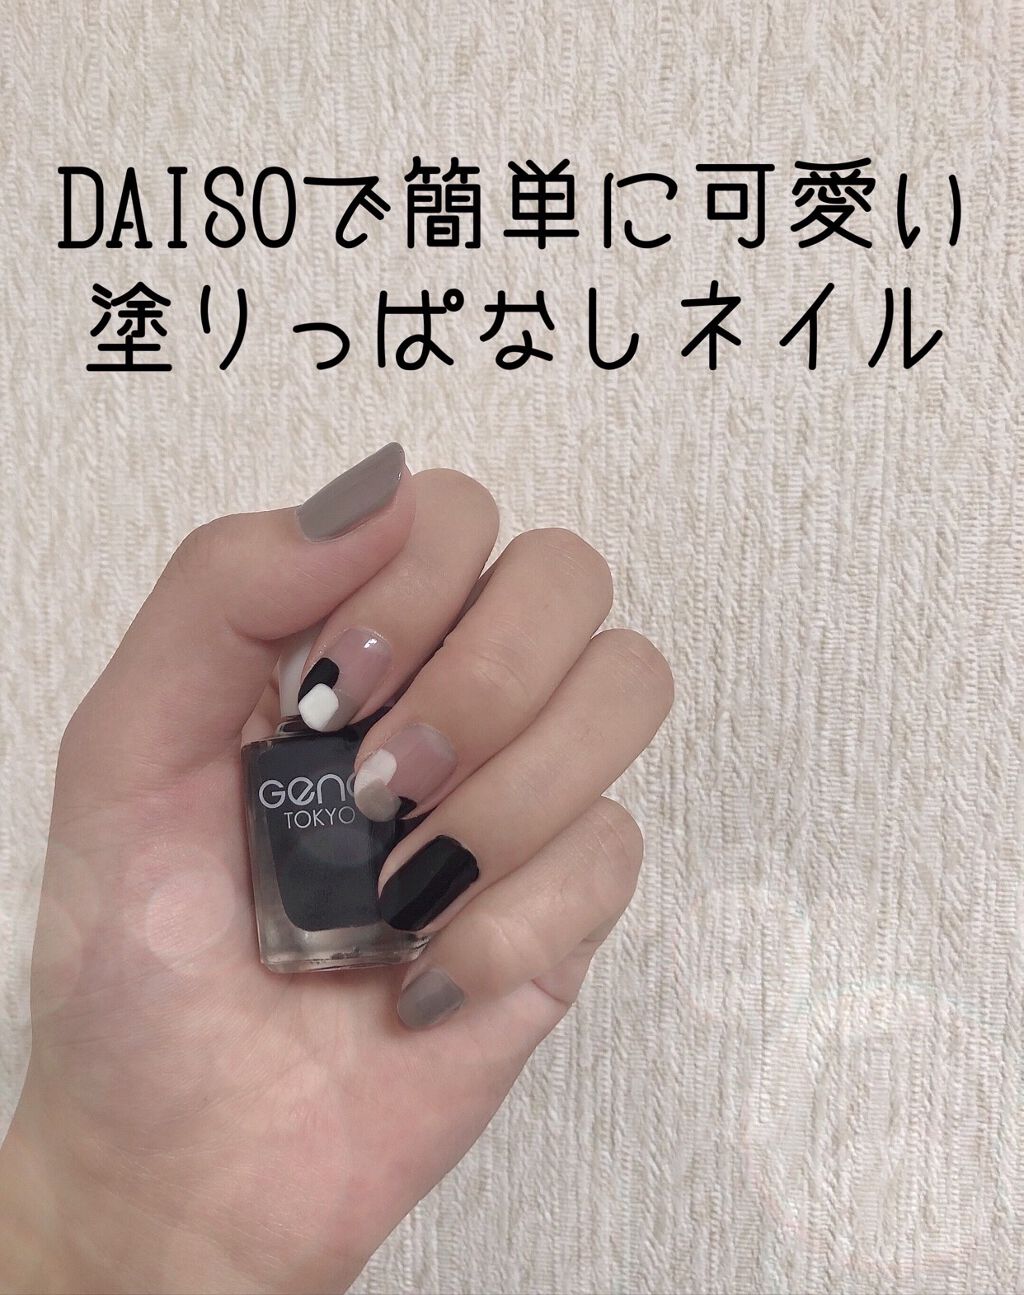 サンリオネイル Daisoを使った口コミ 塗りっぱなしネイル Daiso 多分 By ちょび 脂性肌 10代後半 Lips